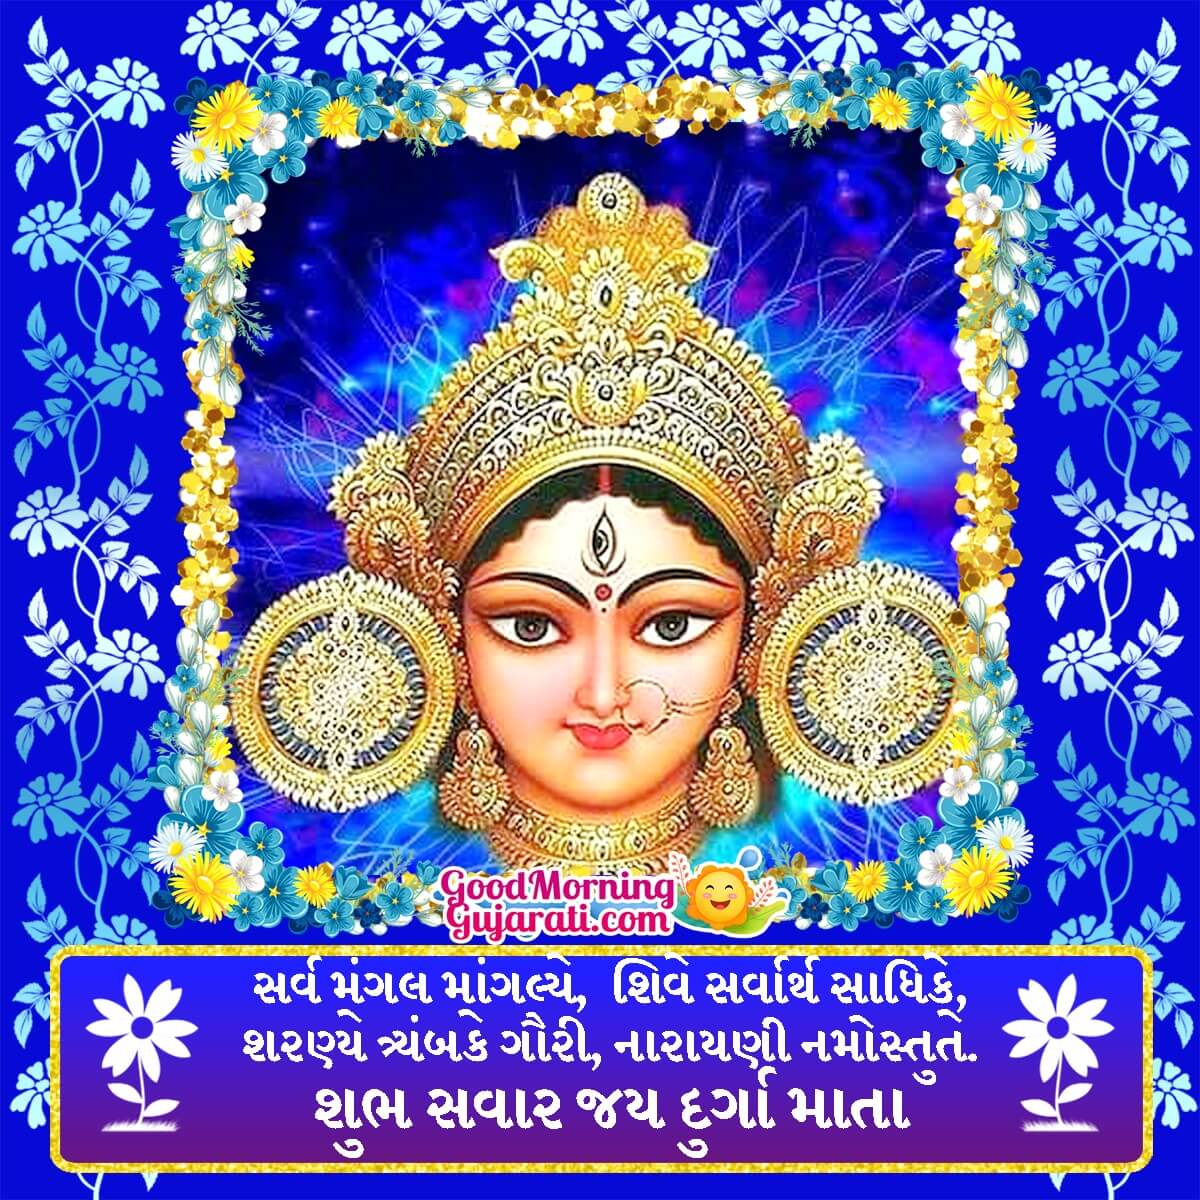 Shubh Savar Jai Durga Mata Image